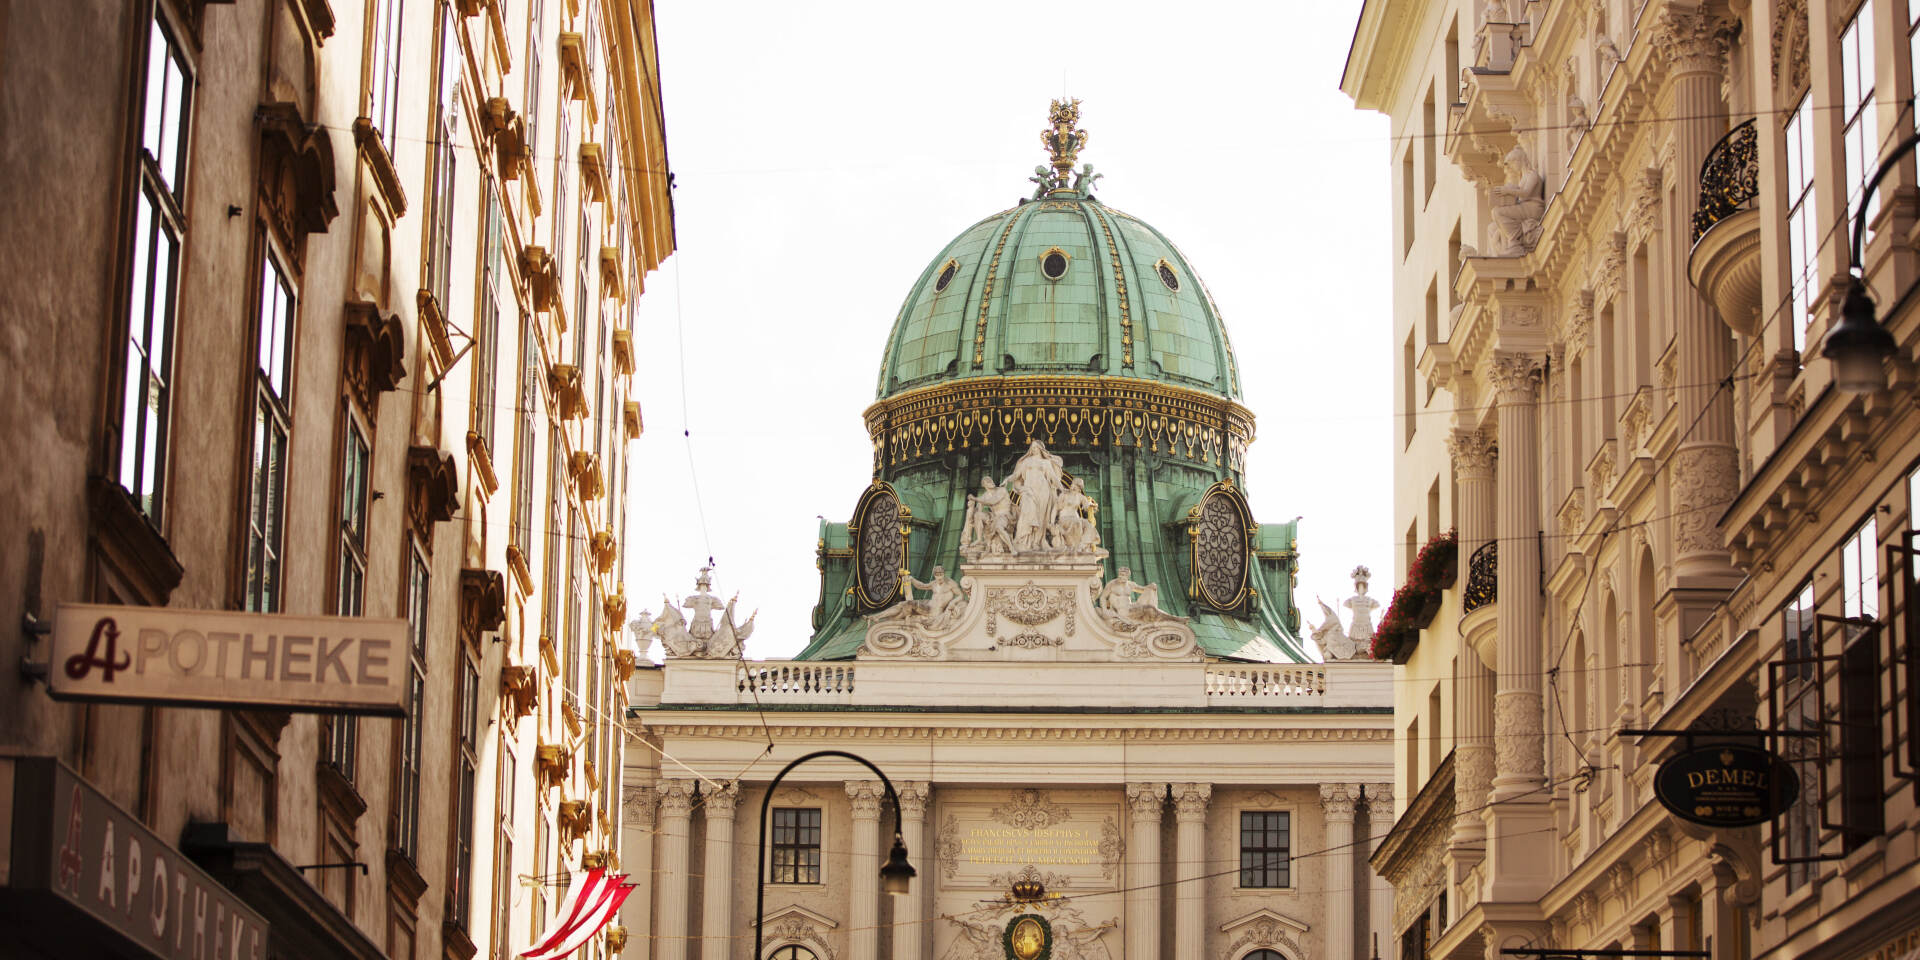 Vienna - Hofburg, Michaelerkuppel dome © WienTourismus | Peter Rigaud